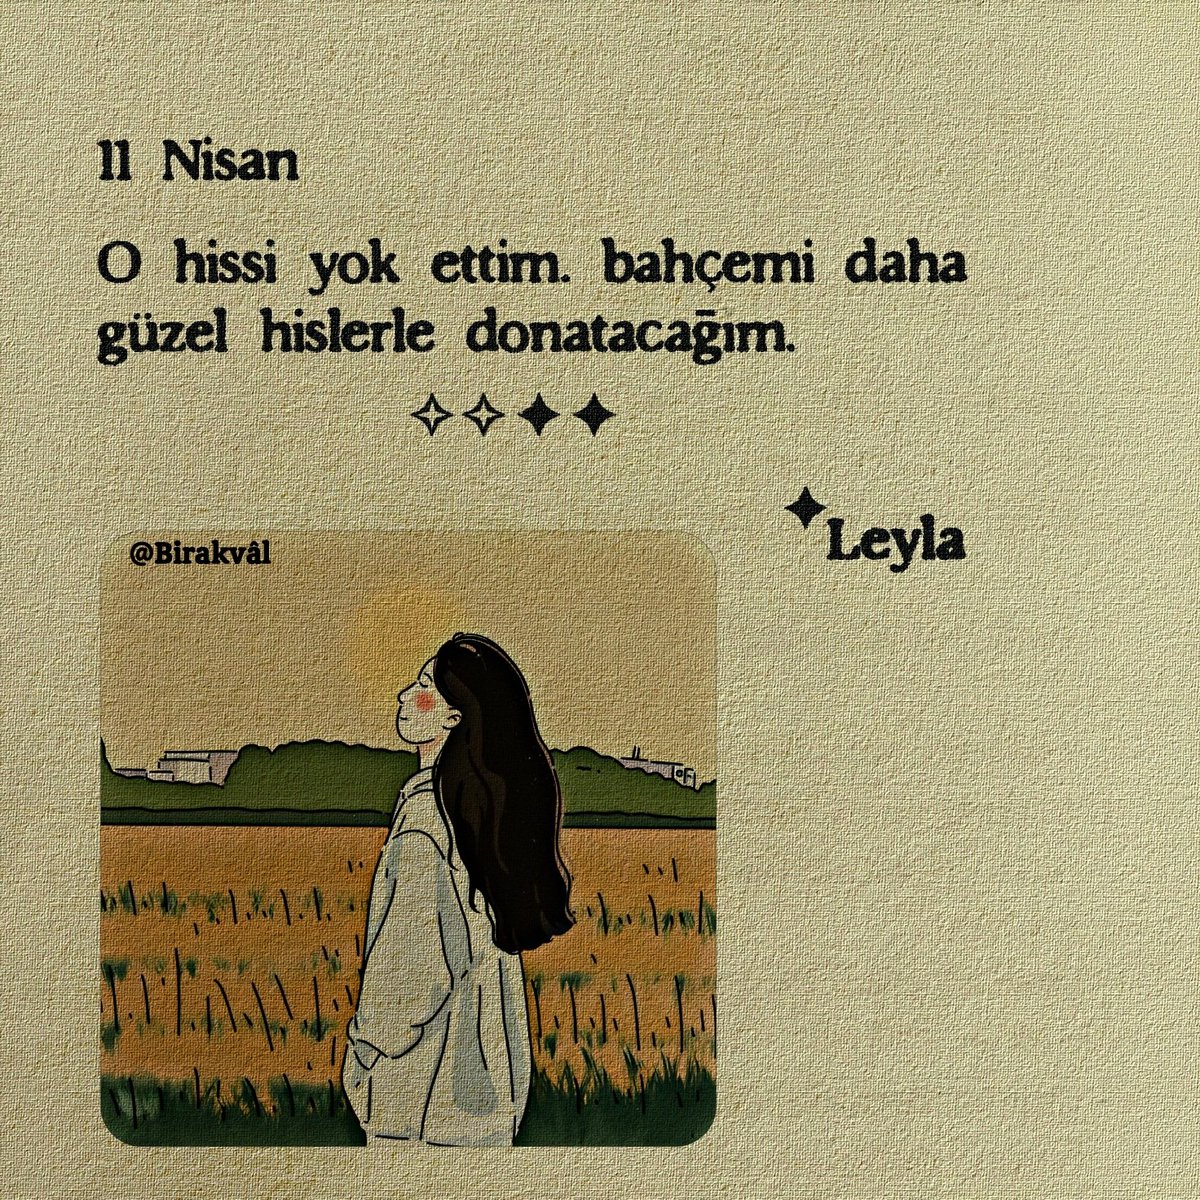 11 Nisan.